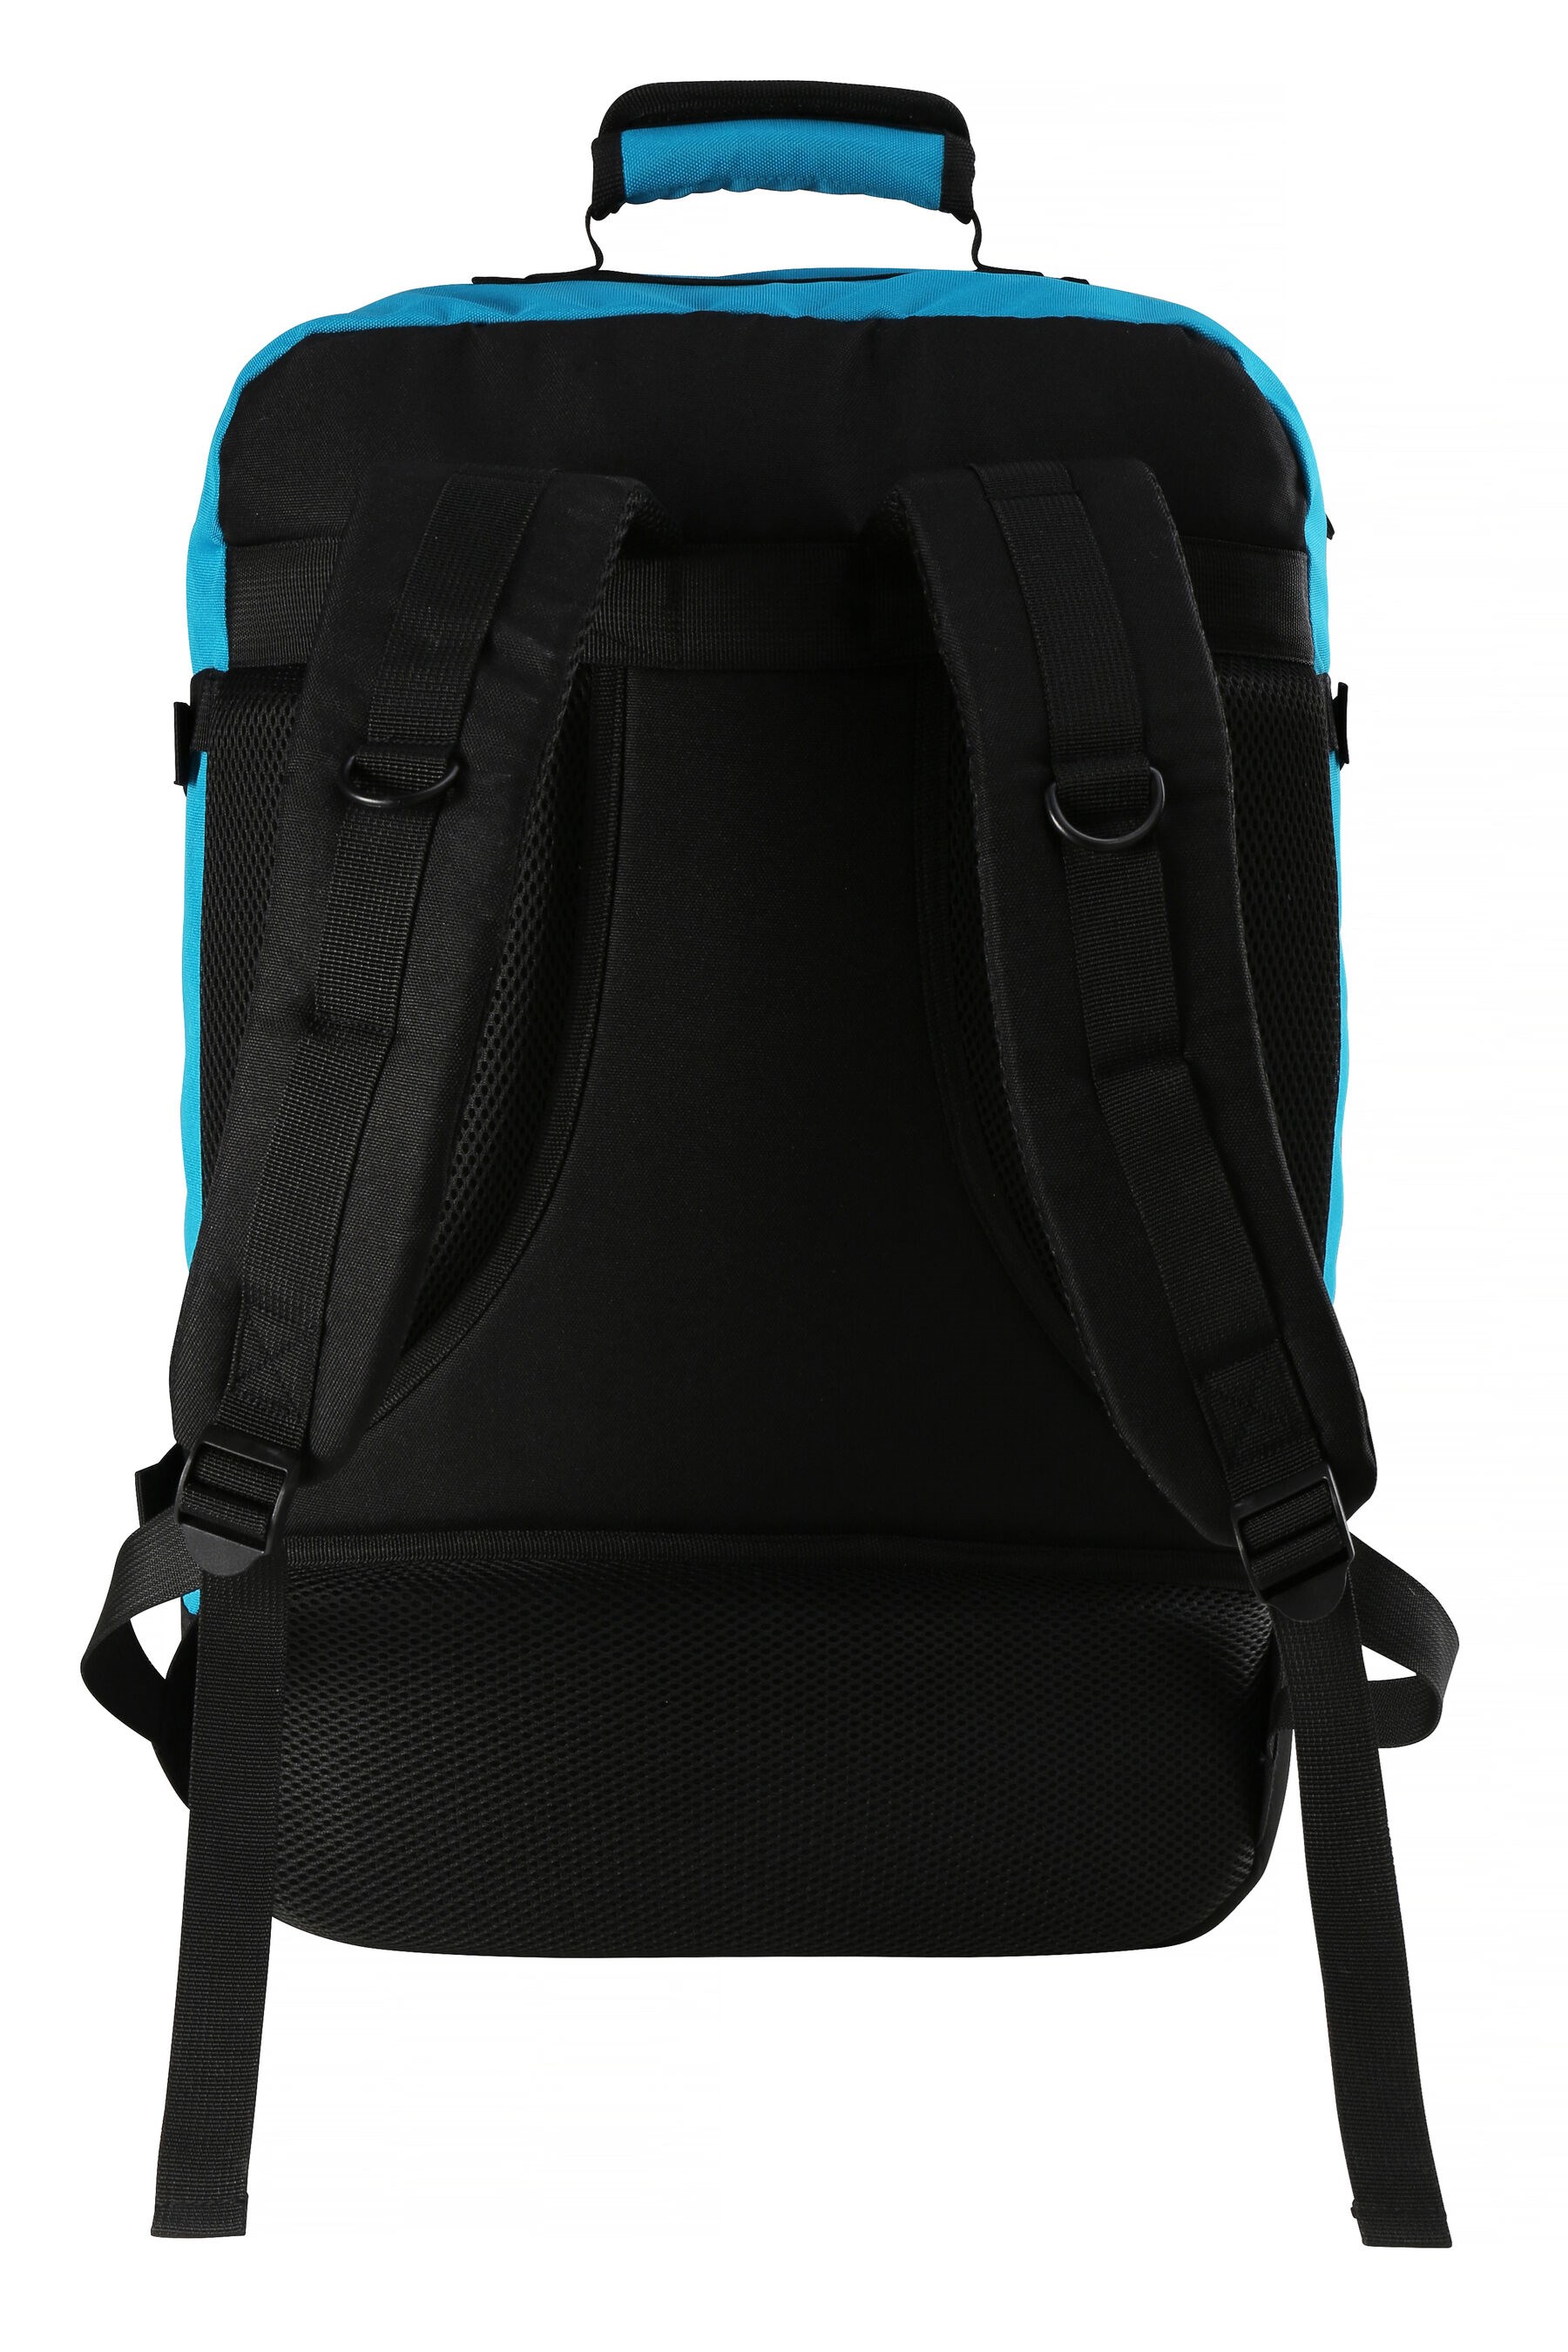 Metz 44L Backpack - 55x40x20cm